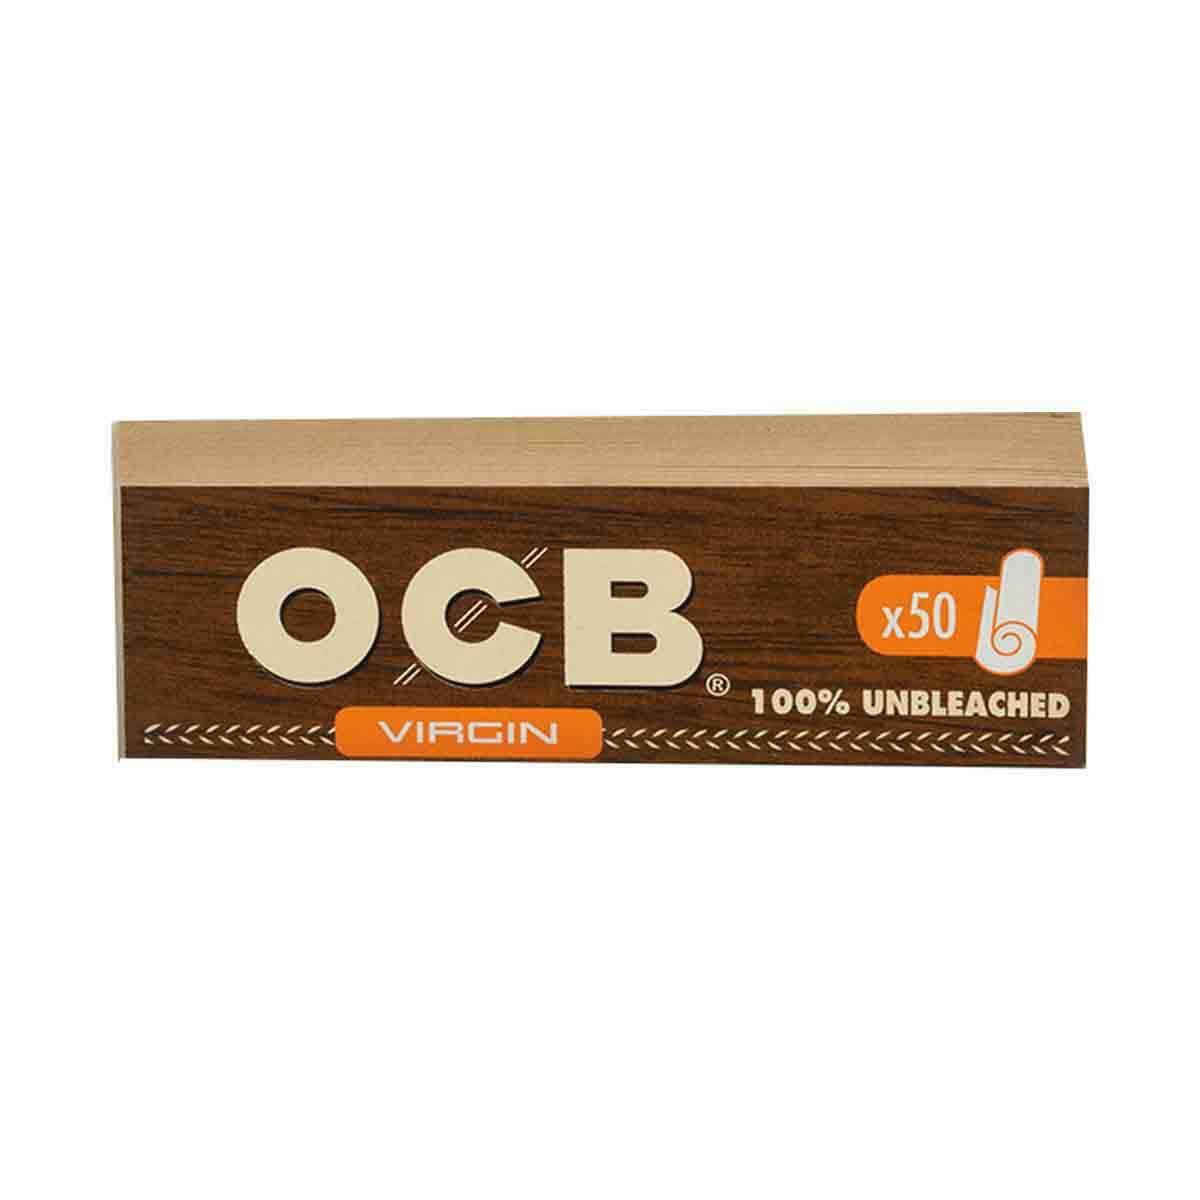 OCB Virgin Brown Tips